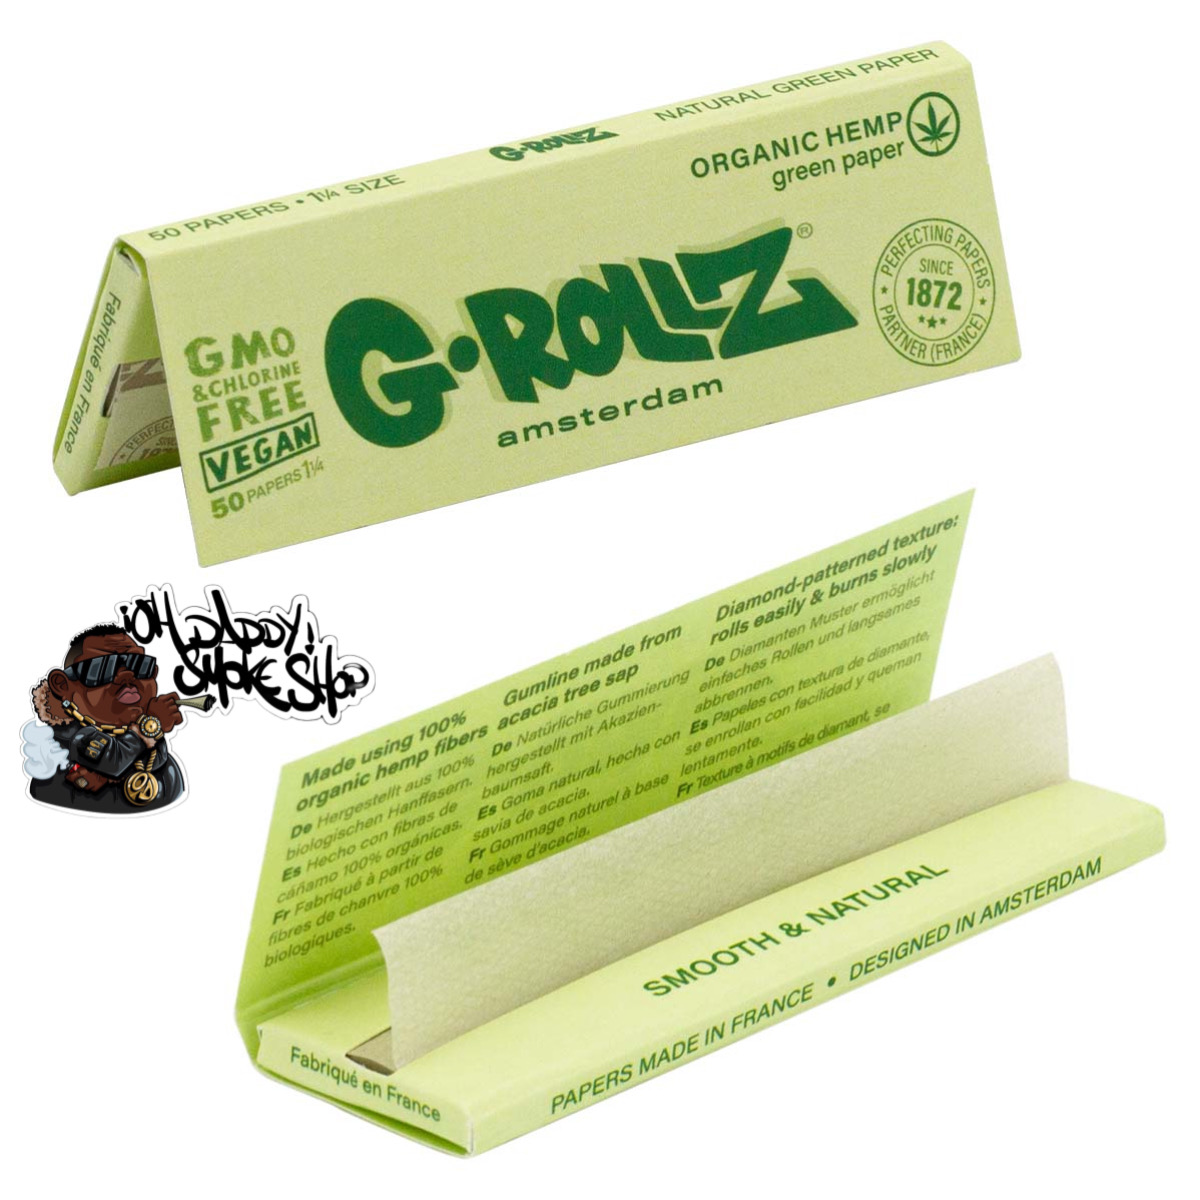 G-Rollz Organic hemp green 1 1/4